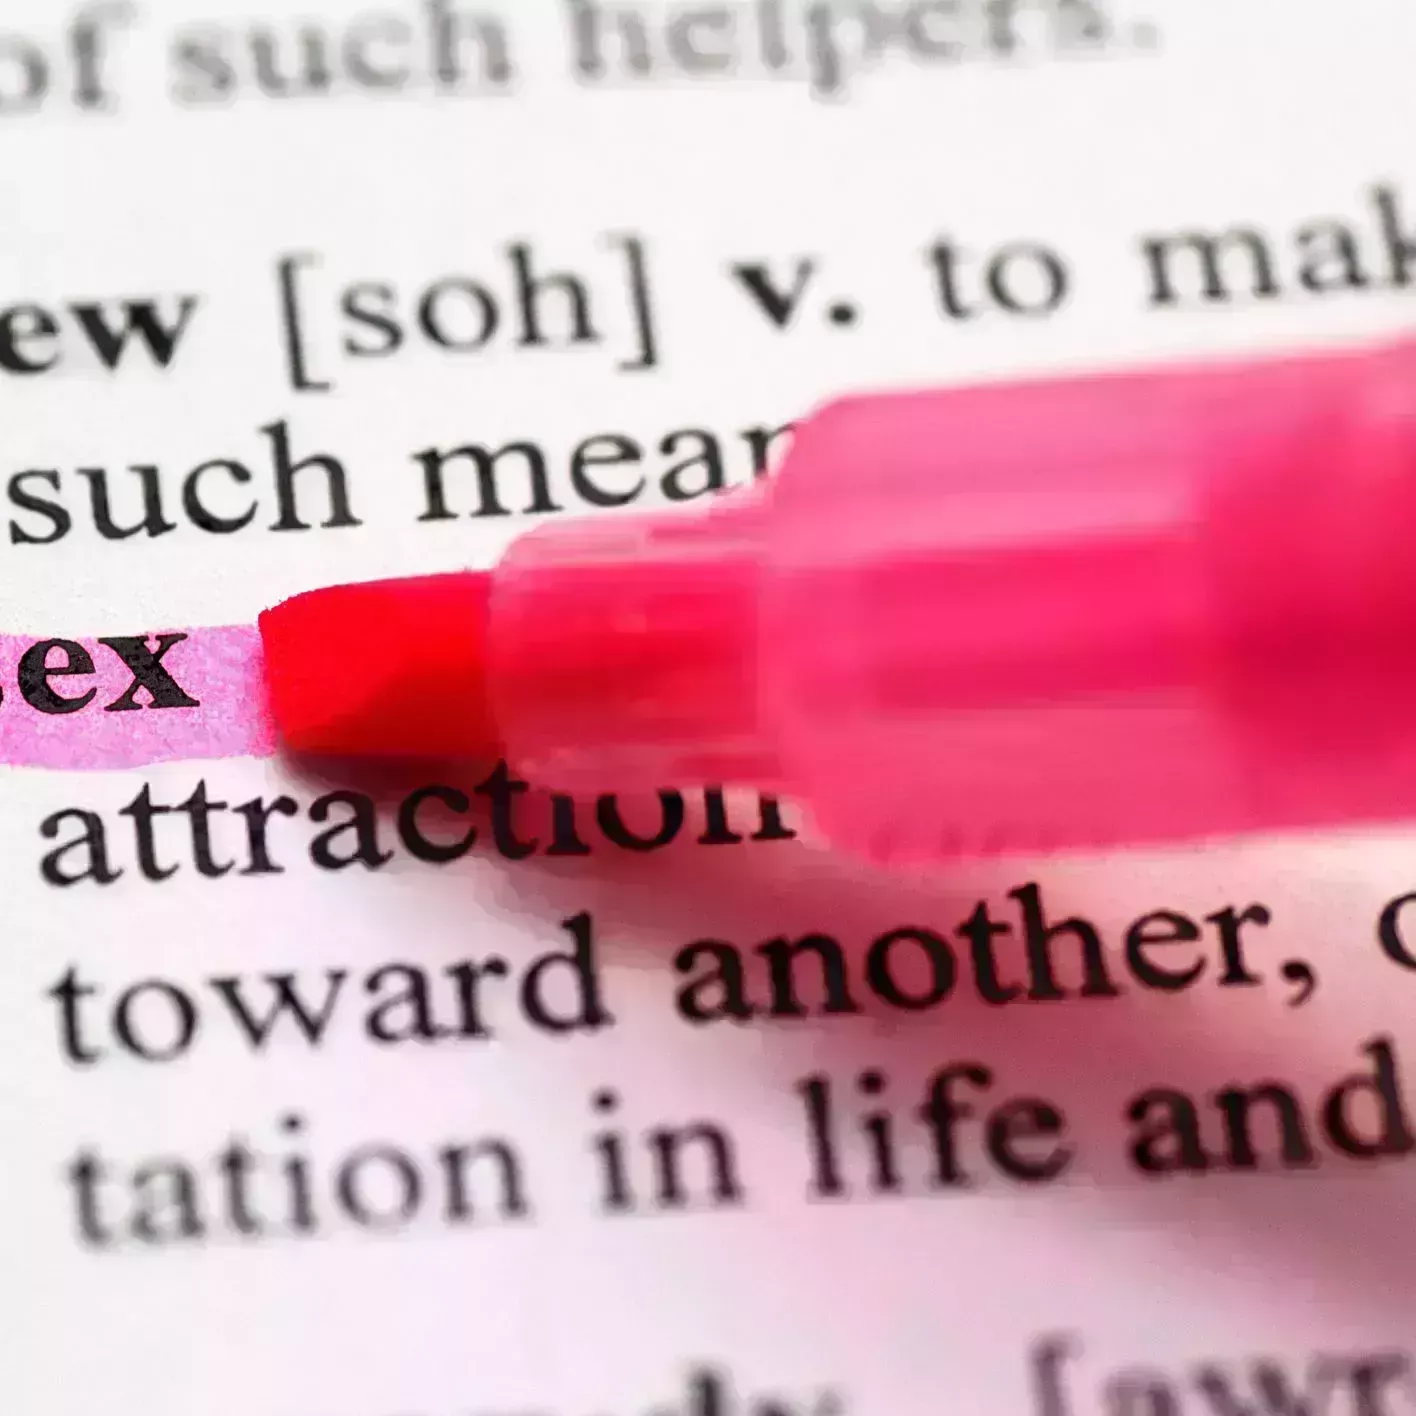 sex terms sex slang sex definitions